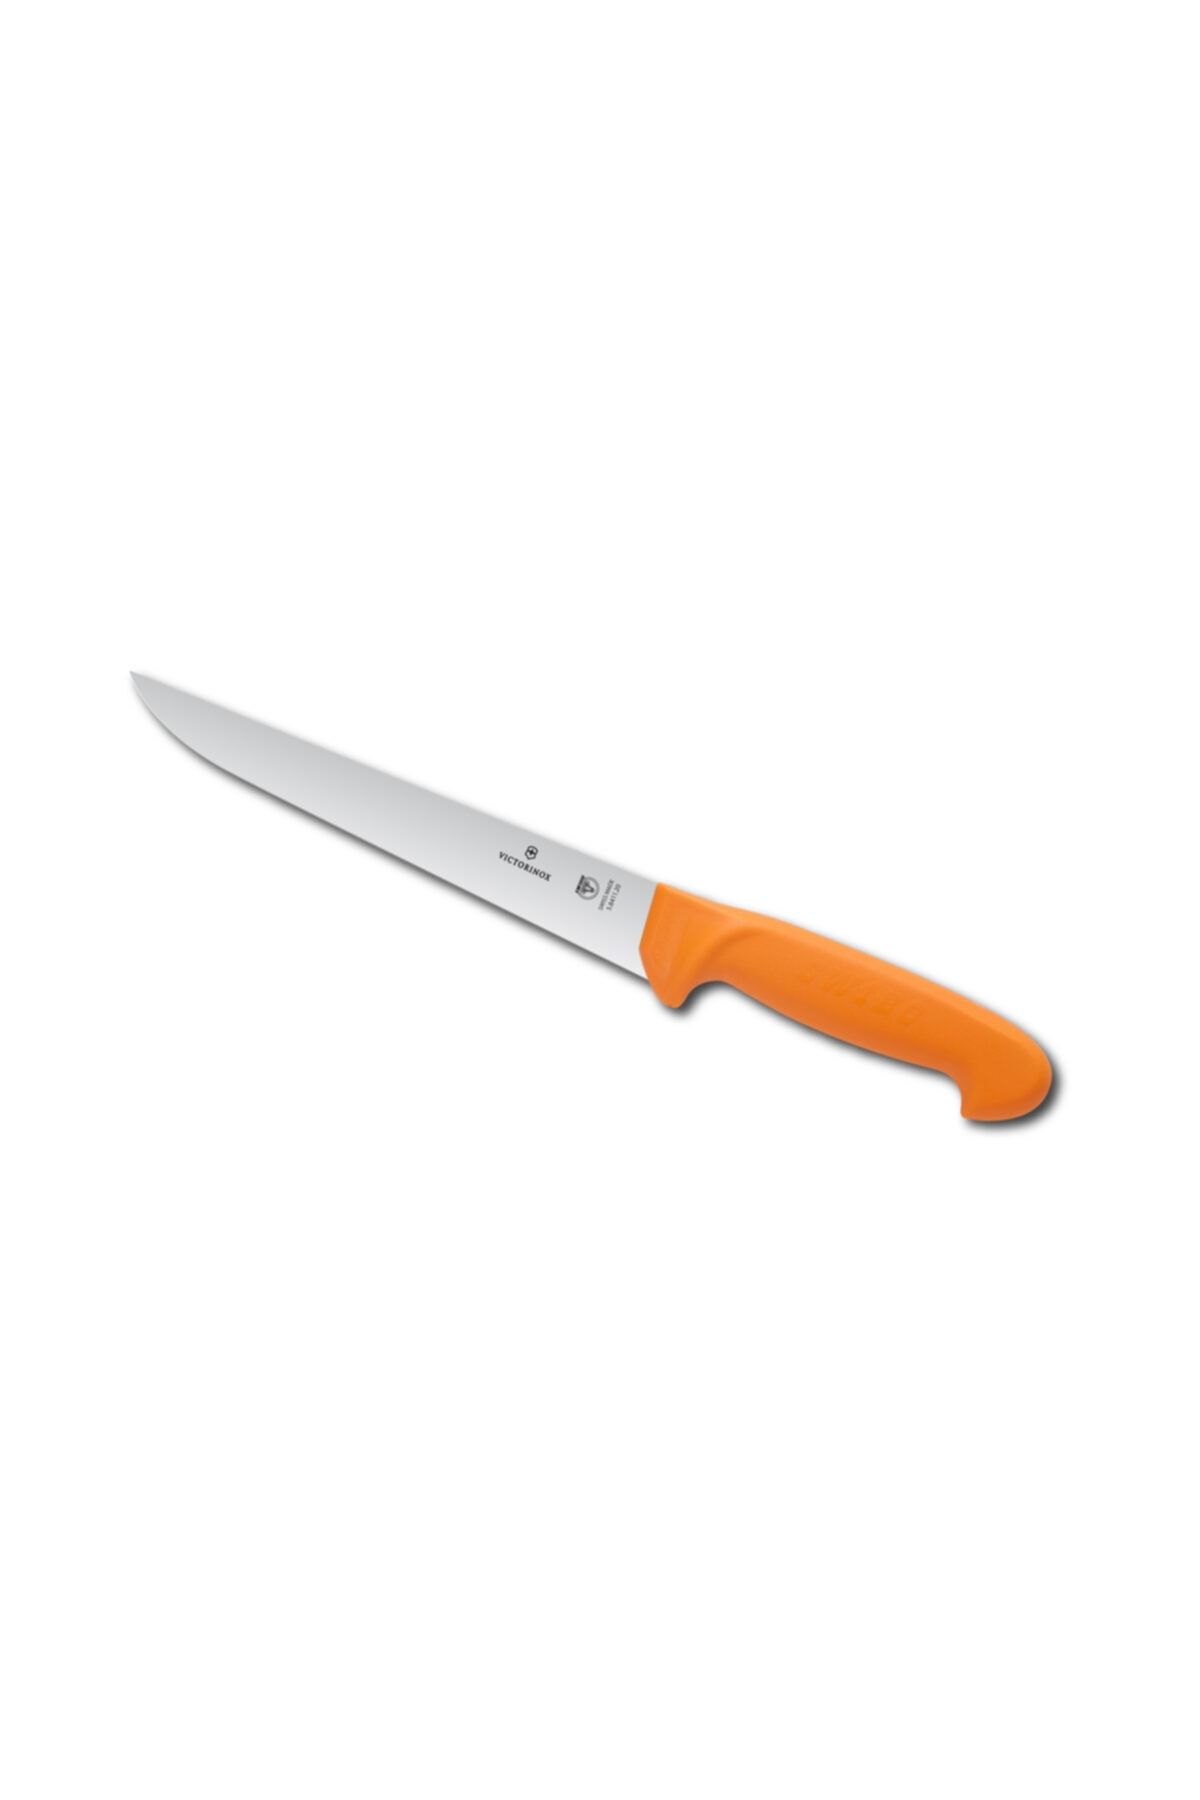 VICTORINOX Swibo Mutfak Bıçağı Dar 20 Cm 5.8411.20